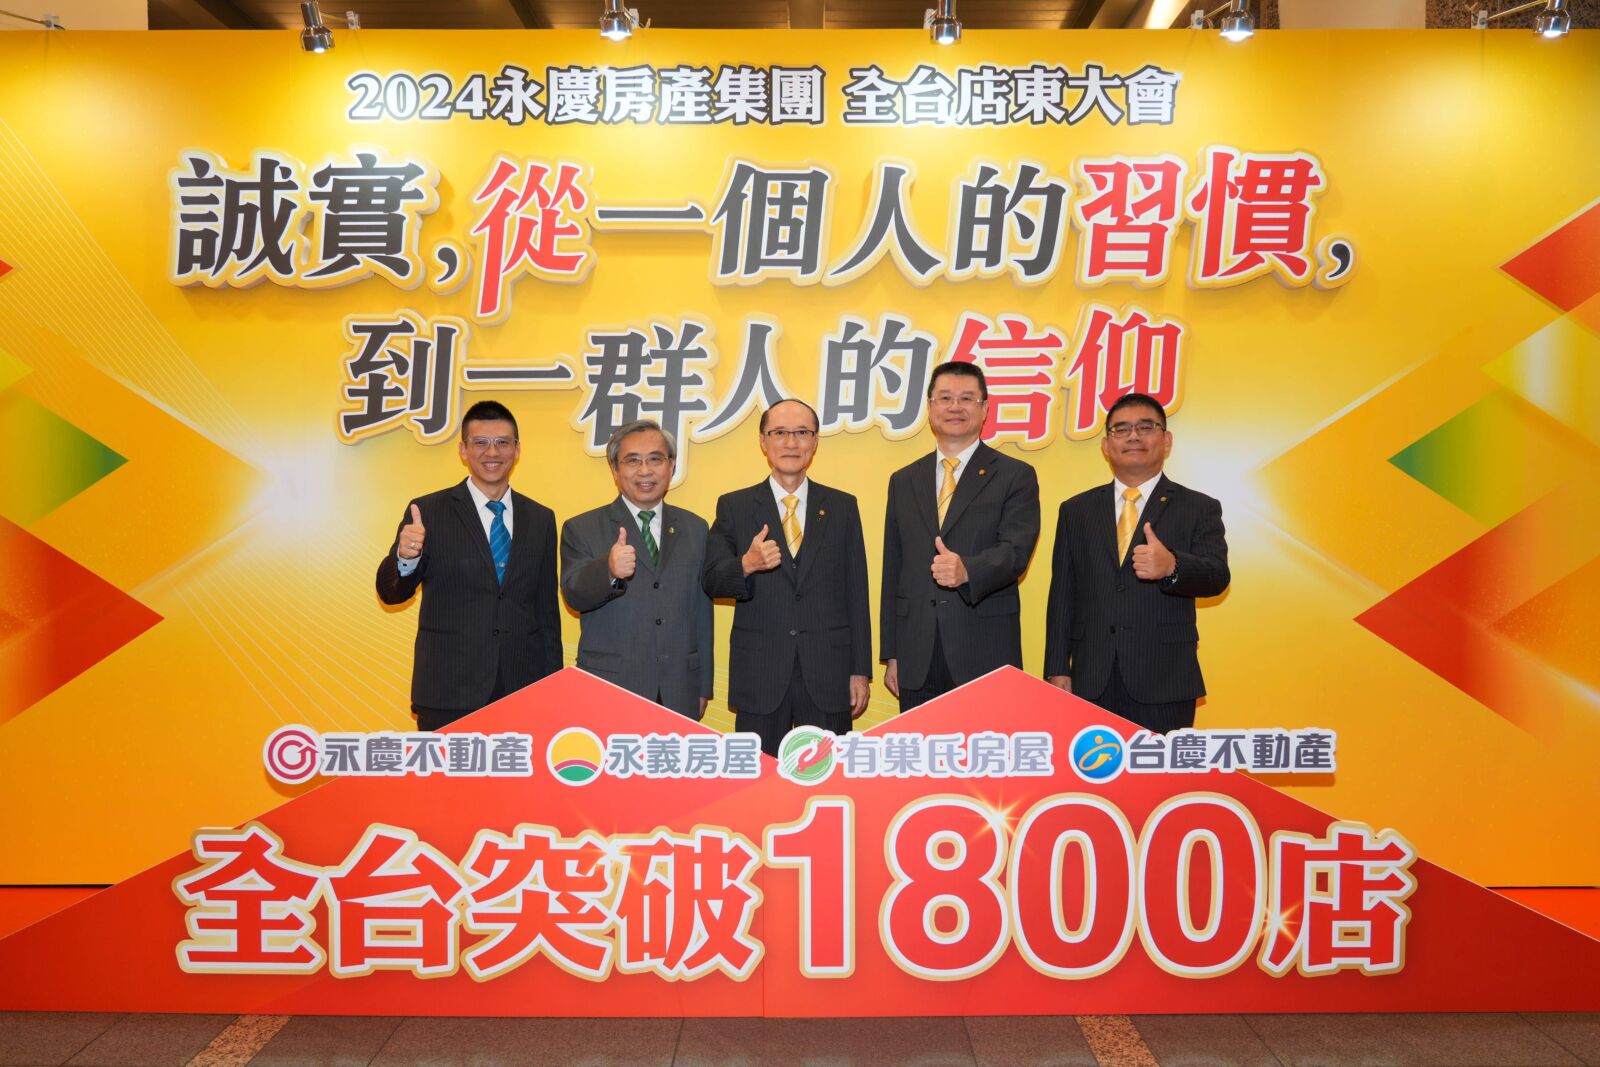 永慶房產集團全台突破1800店 上半年總銷金額「狂飆6200億」穩居全台第一